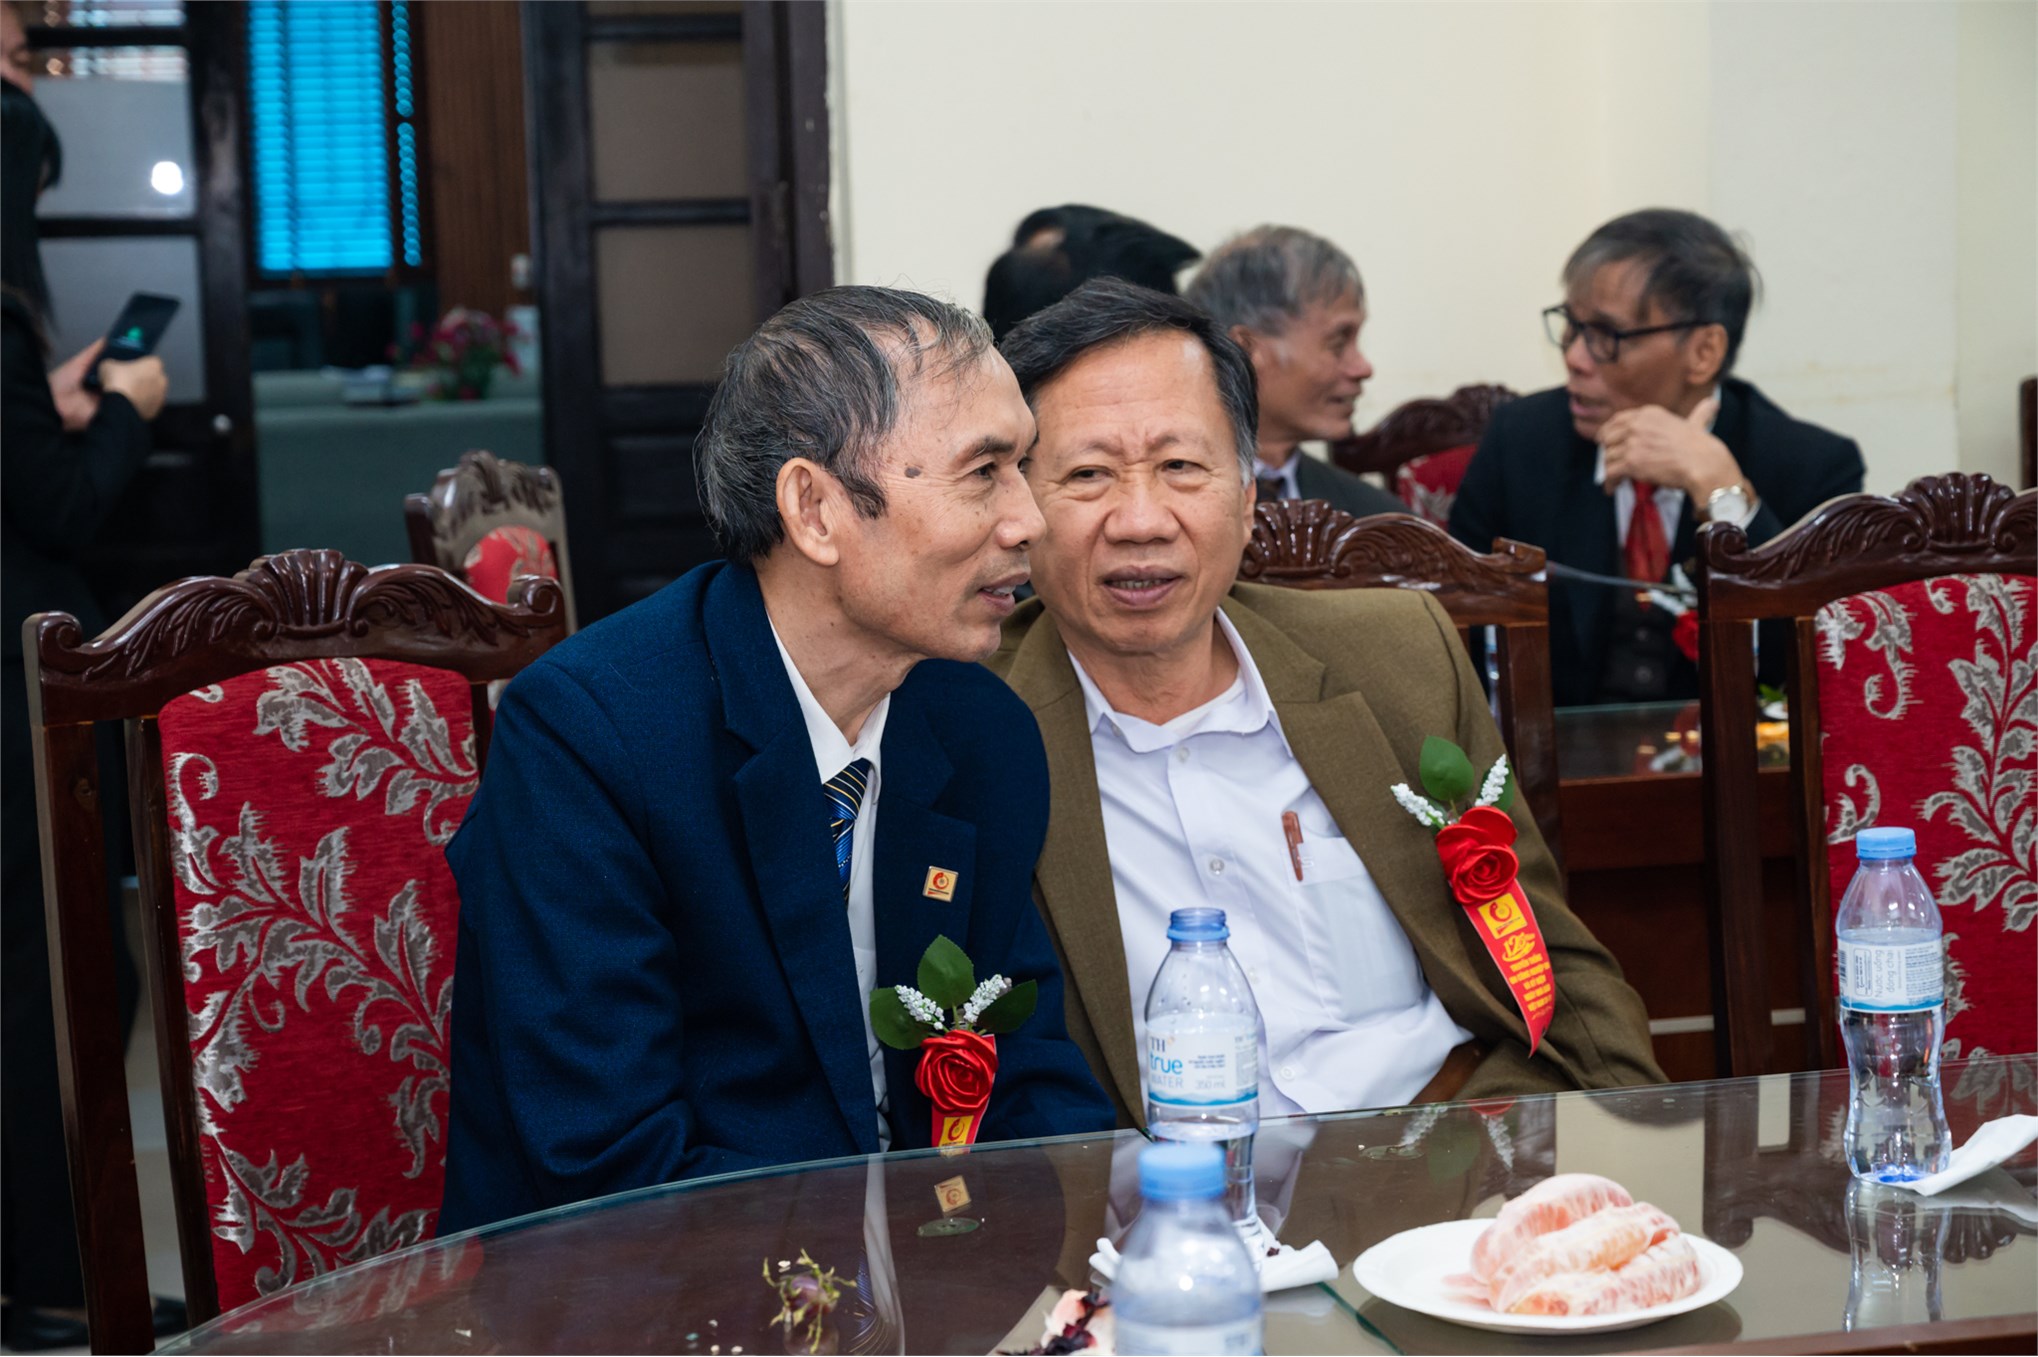 Trung tâm Việt Nhật chào mừng 125 năm ngày truyền thống Nhà trường và 41 năm ngày Nhà giáo Việt Nam 20/11